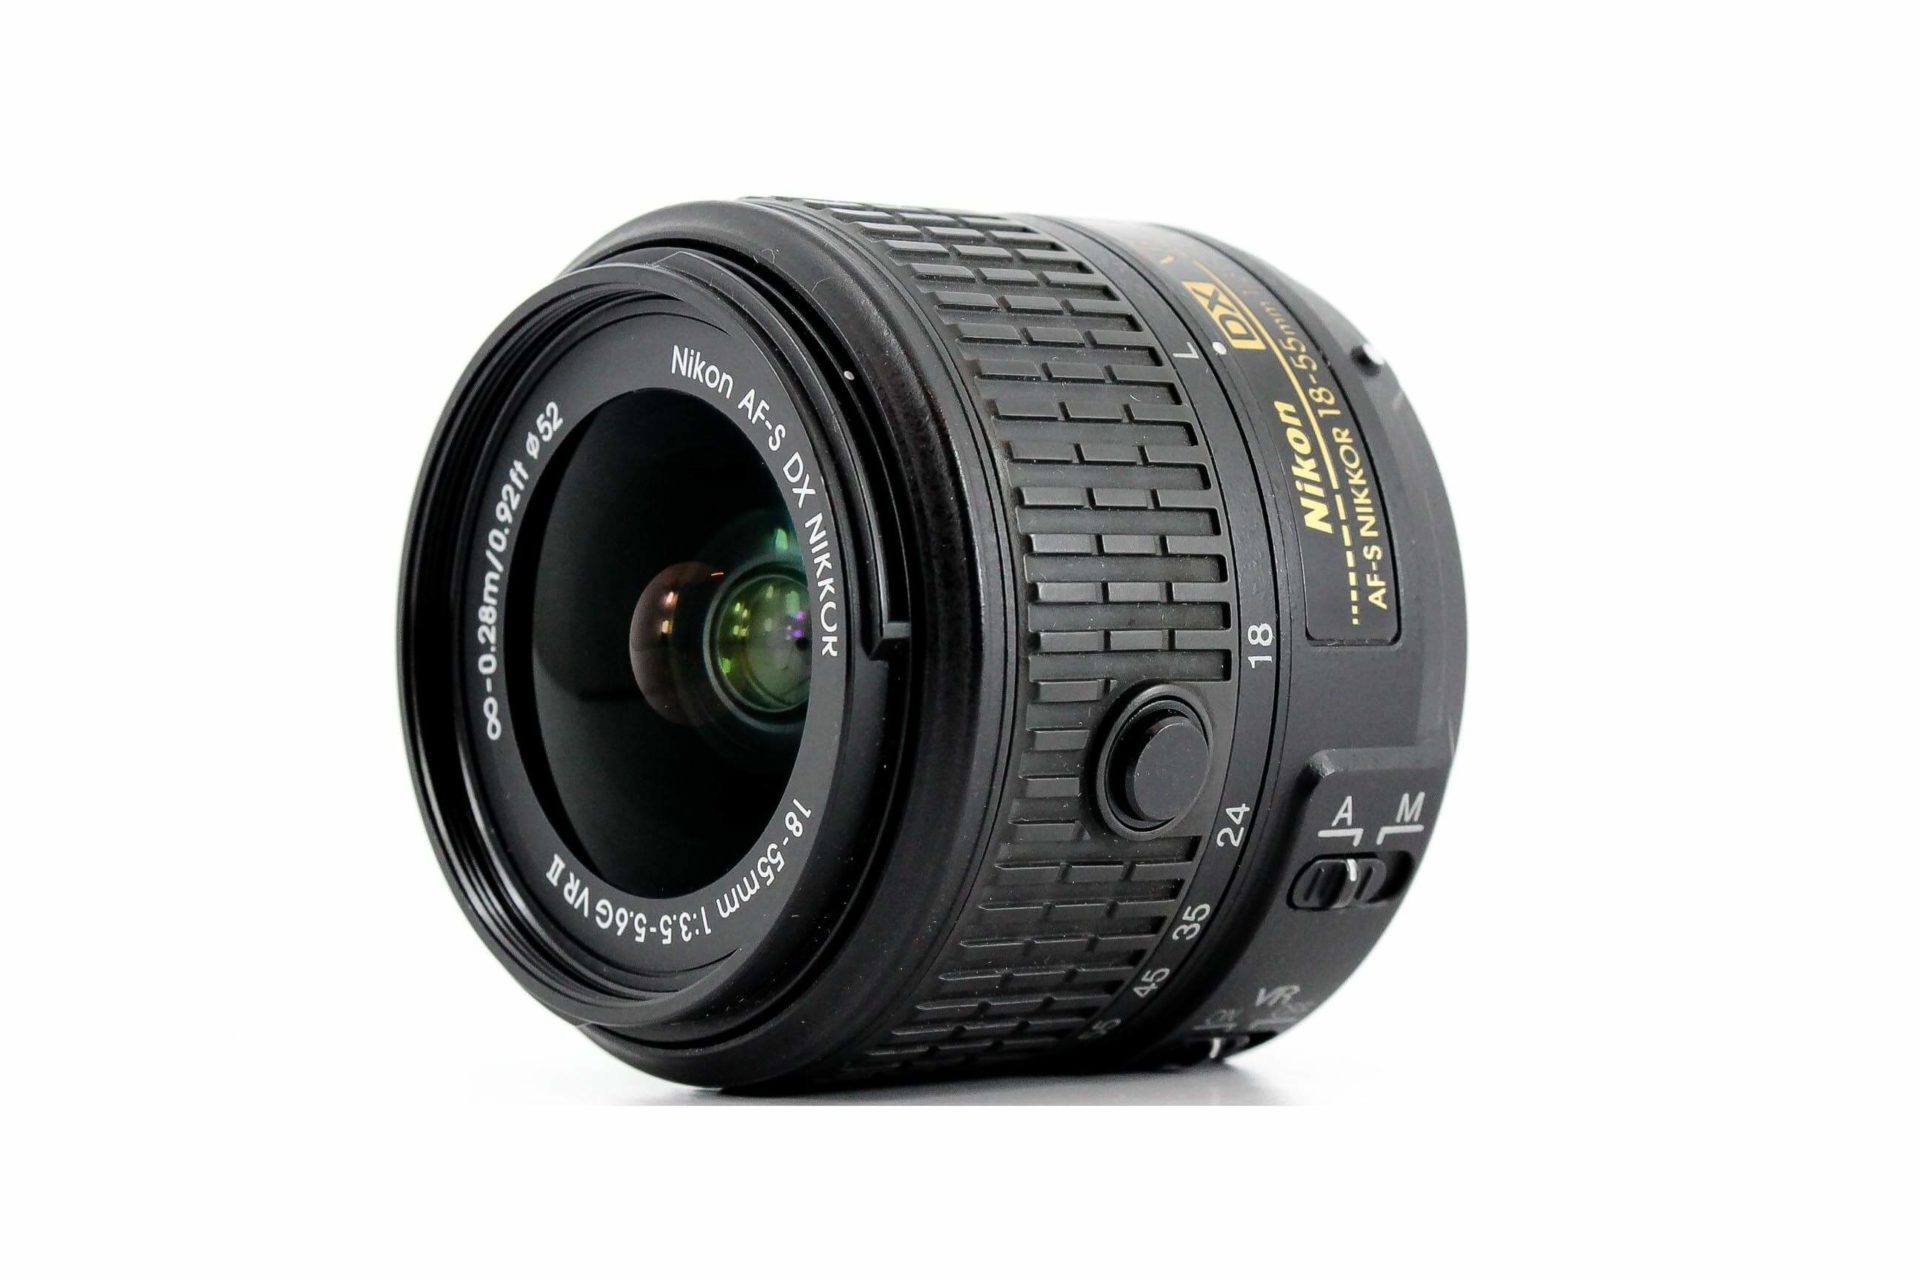 Nikkor 18 55mm vr. Nikon 18-55 VR. Nikon 18-200mm f/3.5-5.6g ed af-s VRII DX. Nikon DX af-s Nikkor 18-55 mm 1:3.5-5.6 g11 ed. Af-s DX Nikkor 18-200mm f/3.5-5.6g ed VR II.